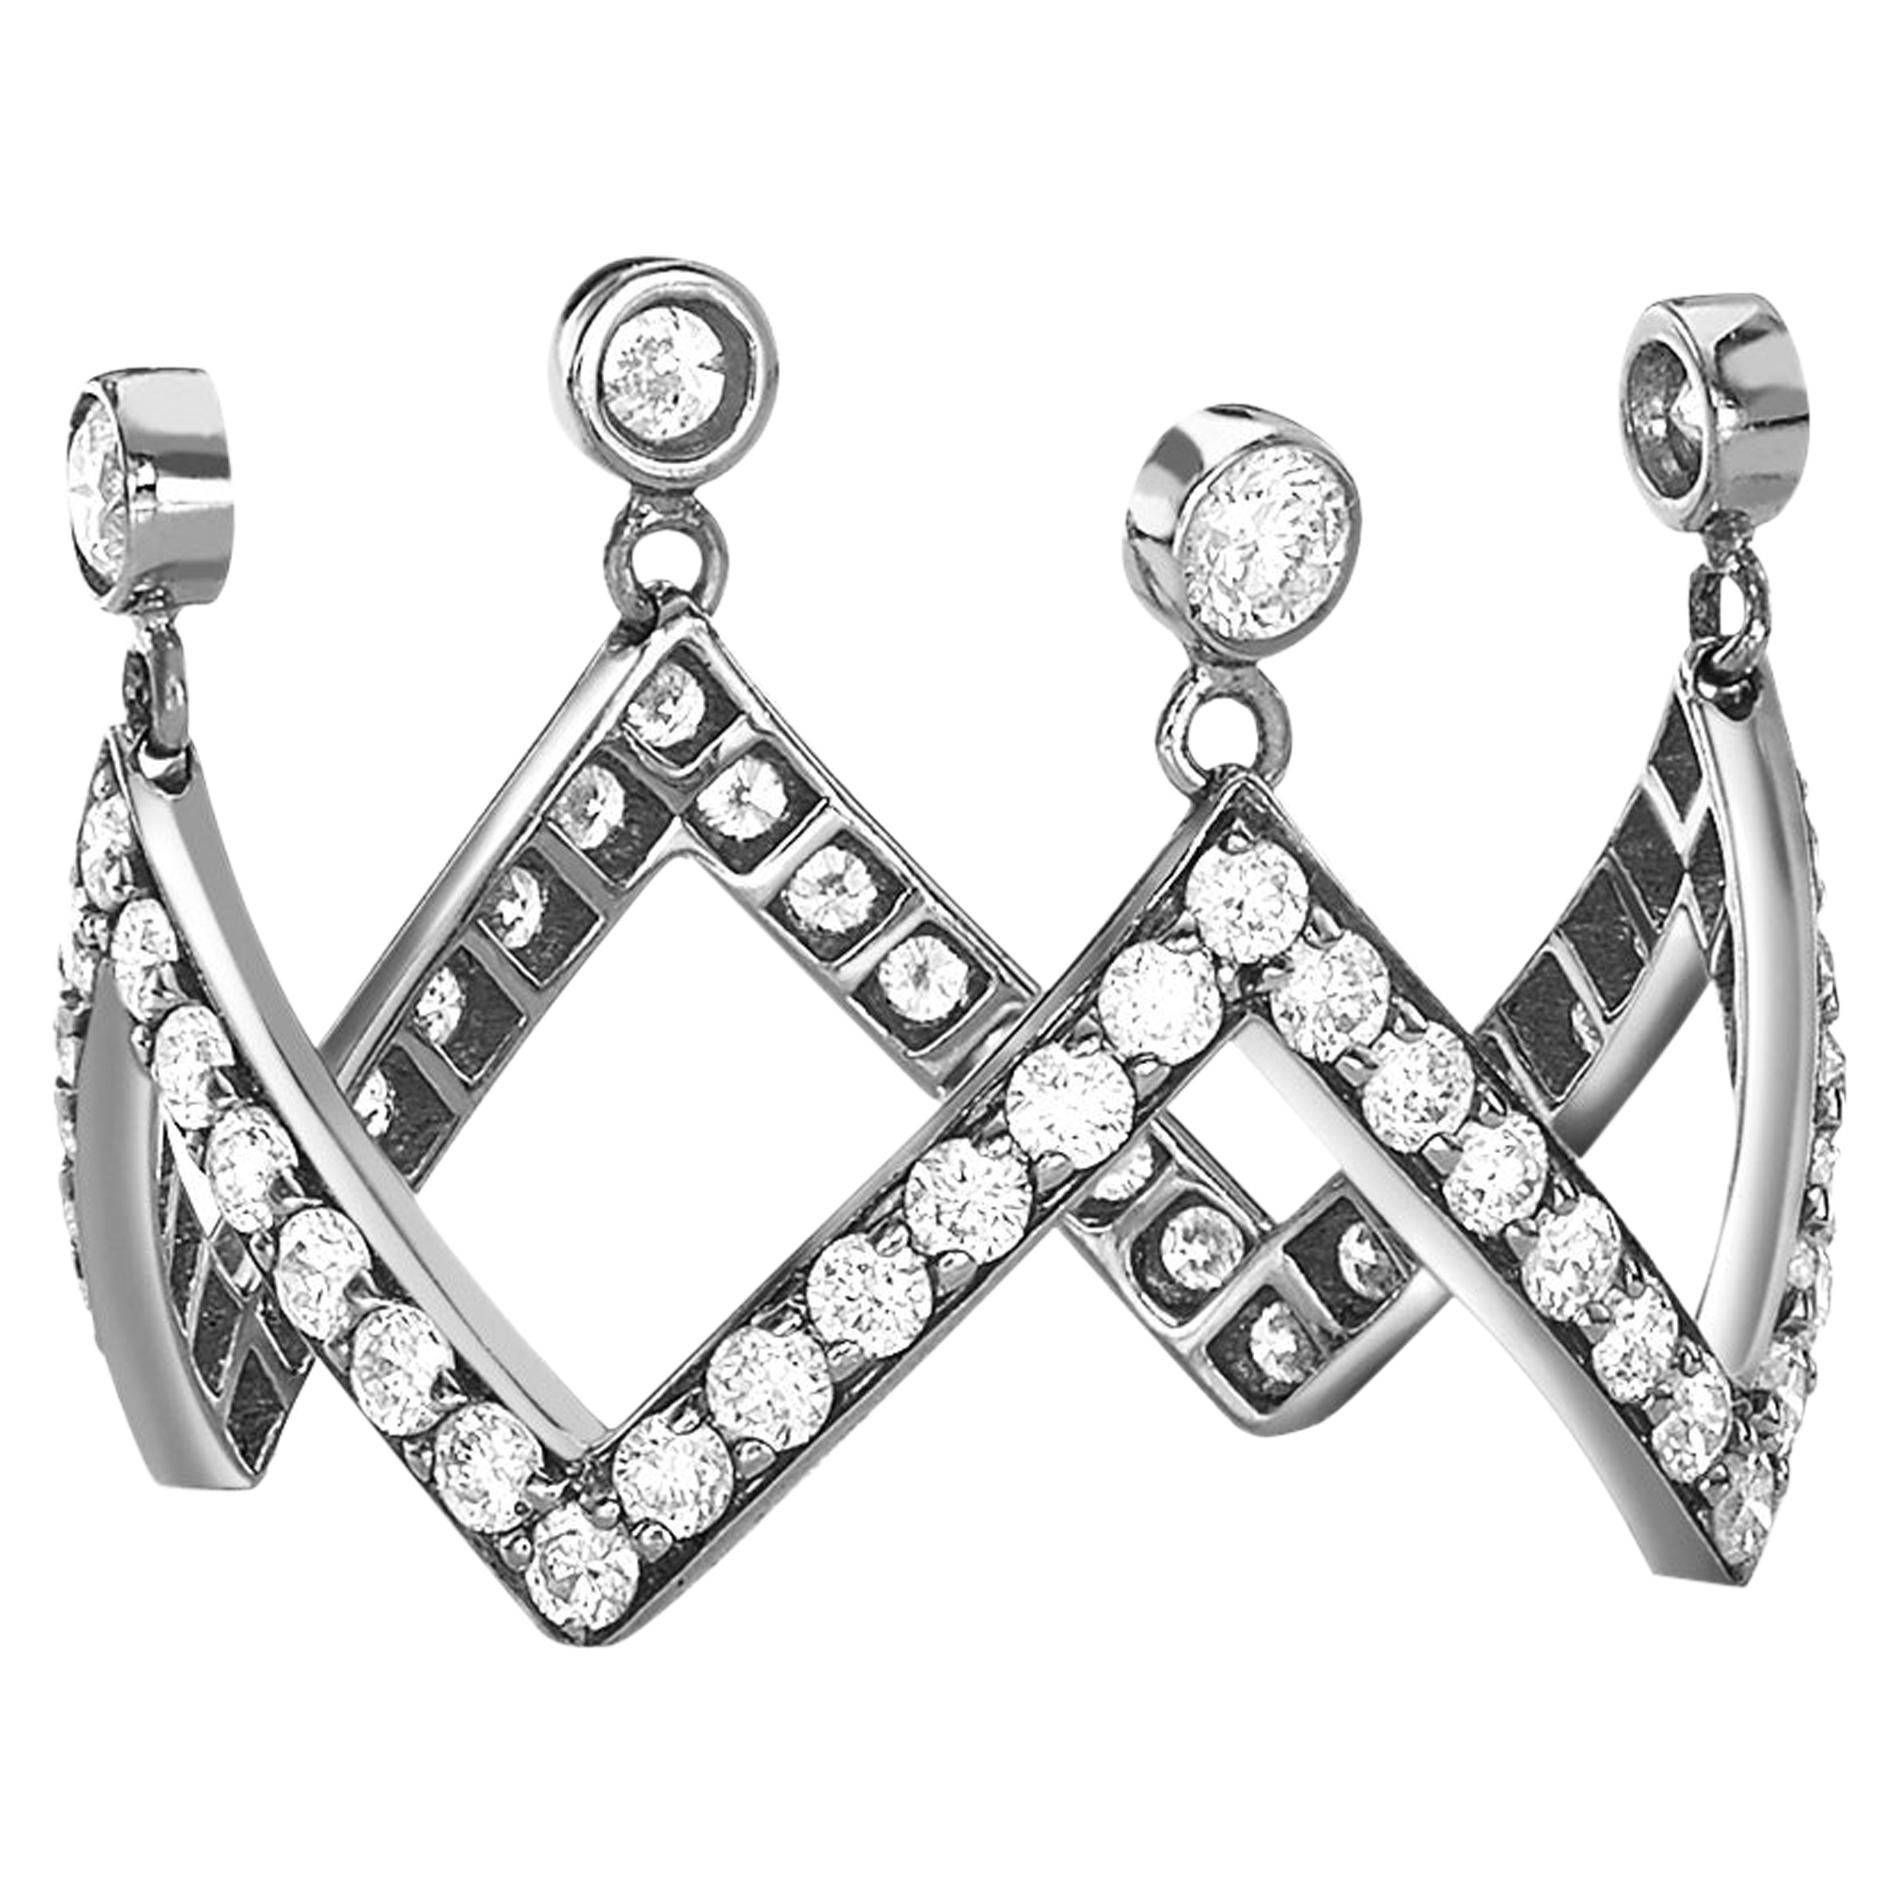 Shop Royal Tiara Crown Ring